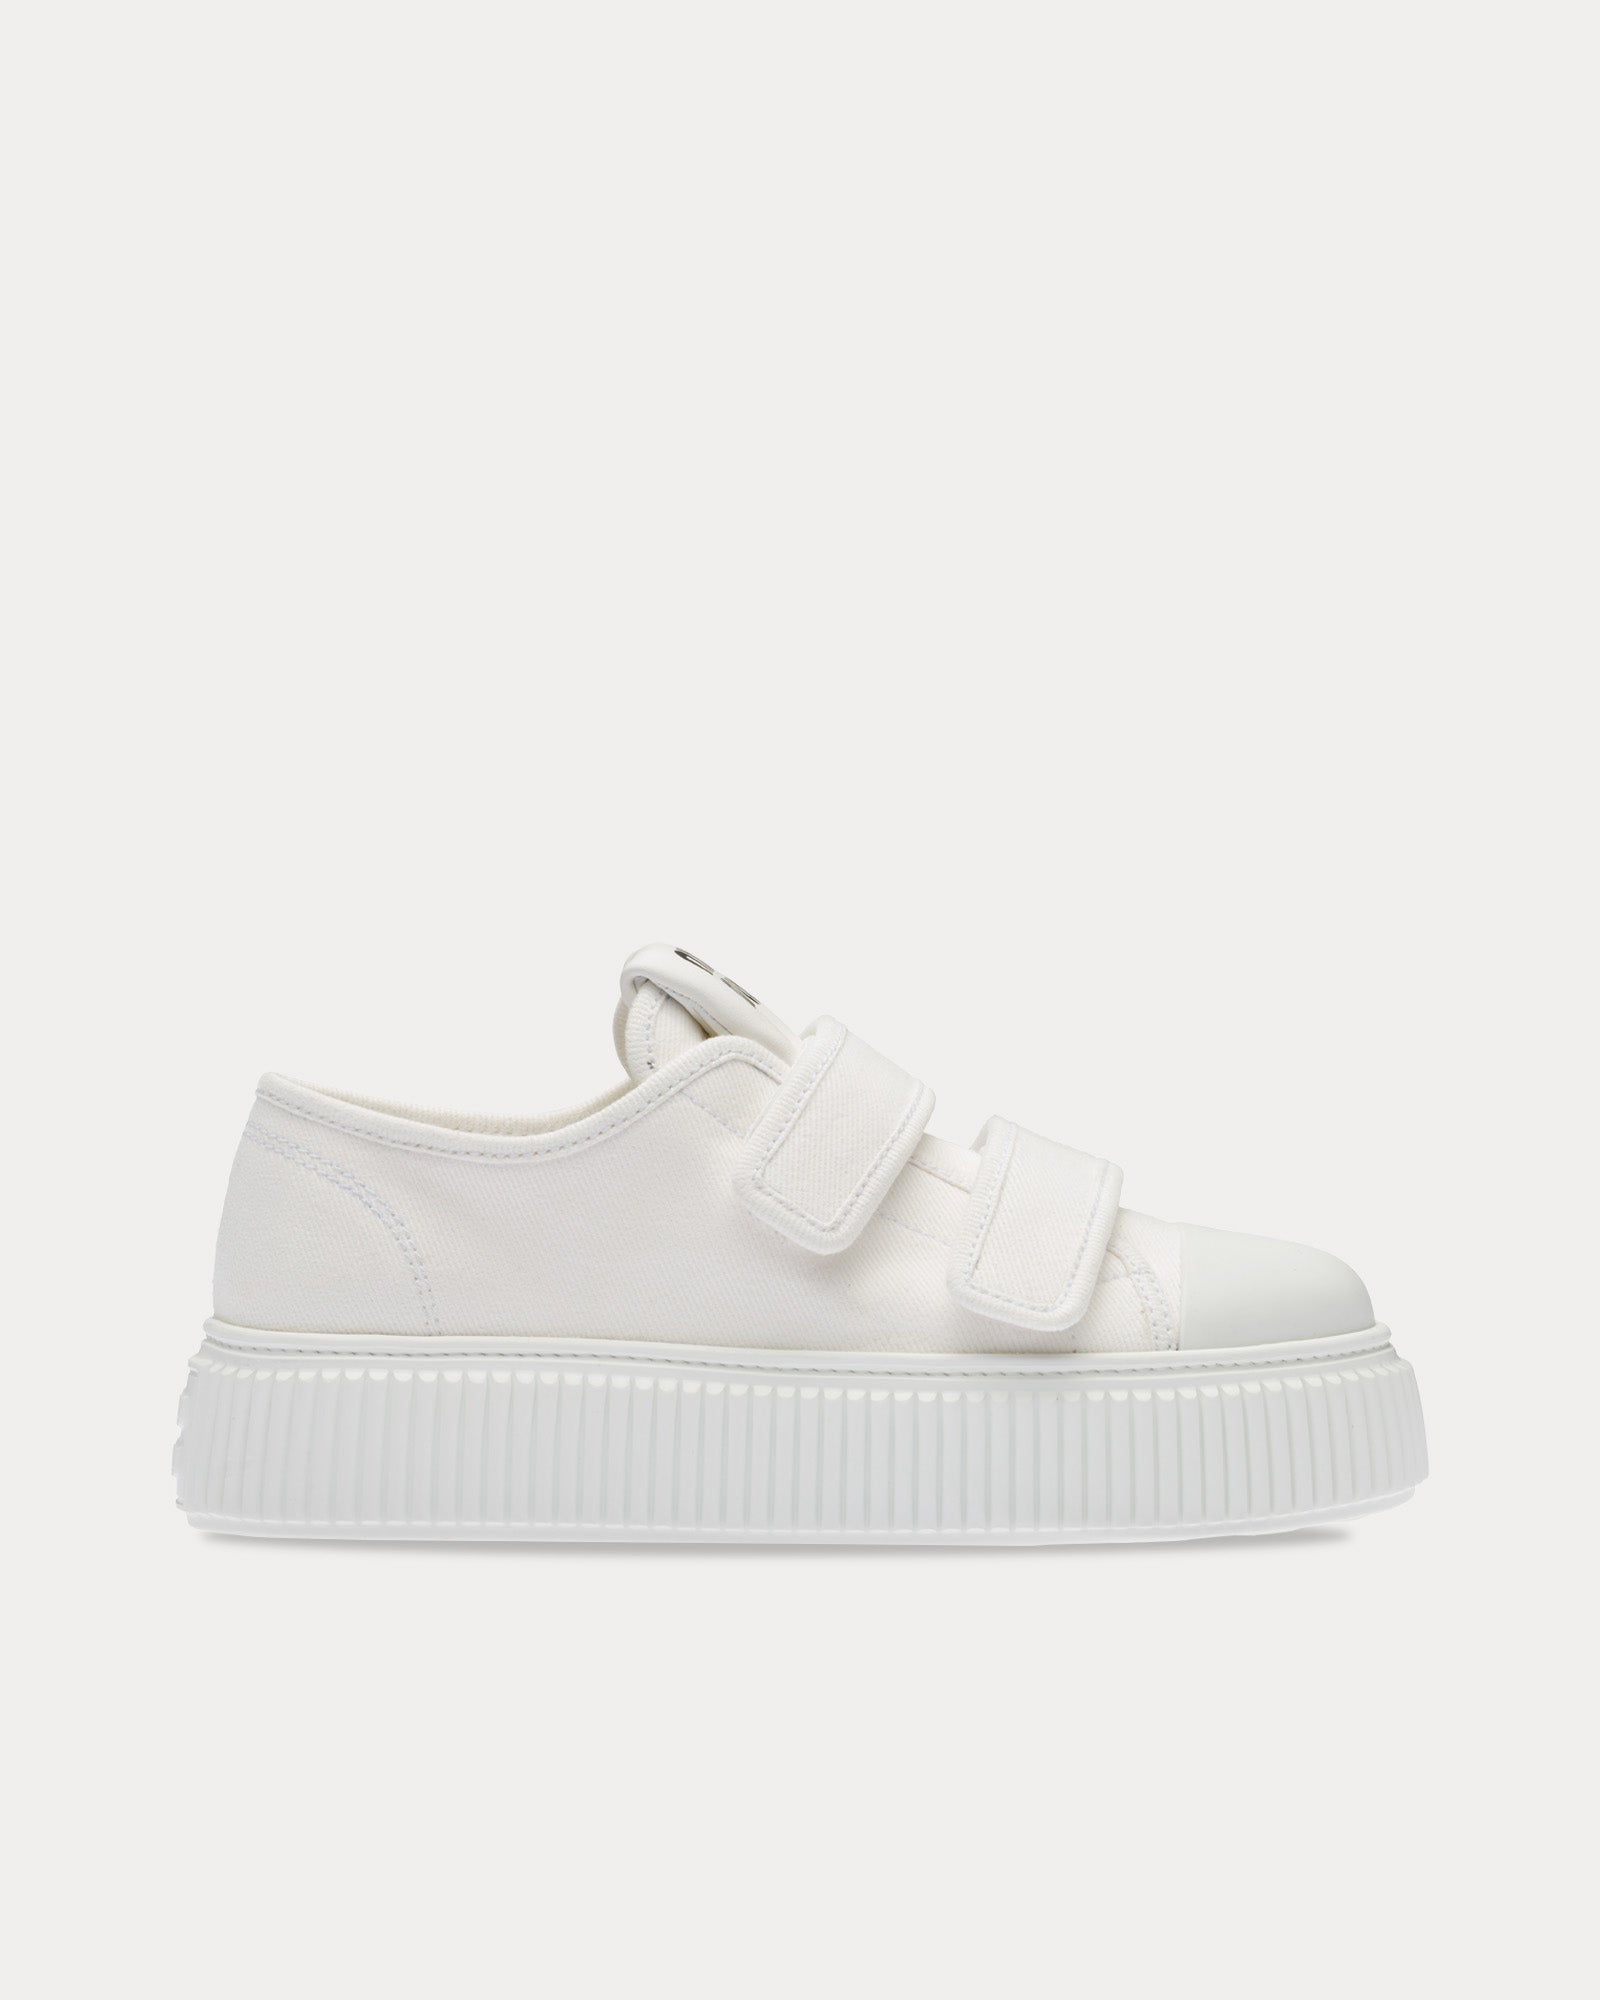 Miu Miu - Strap Denim White Low Top Sneakers